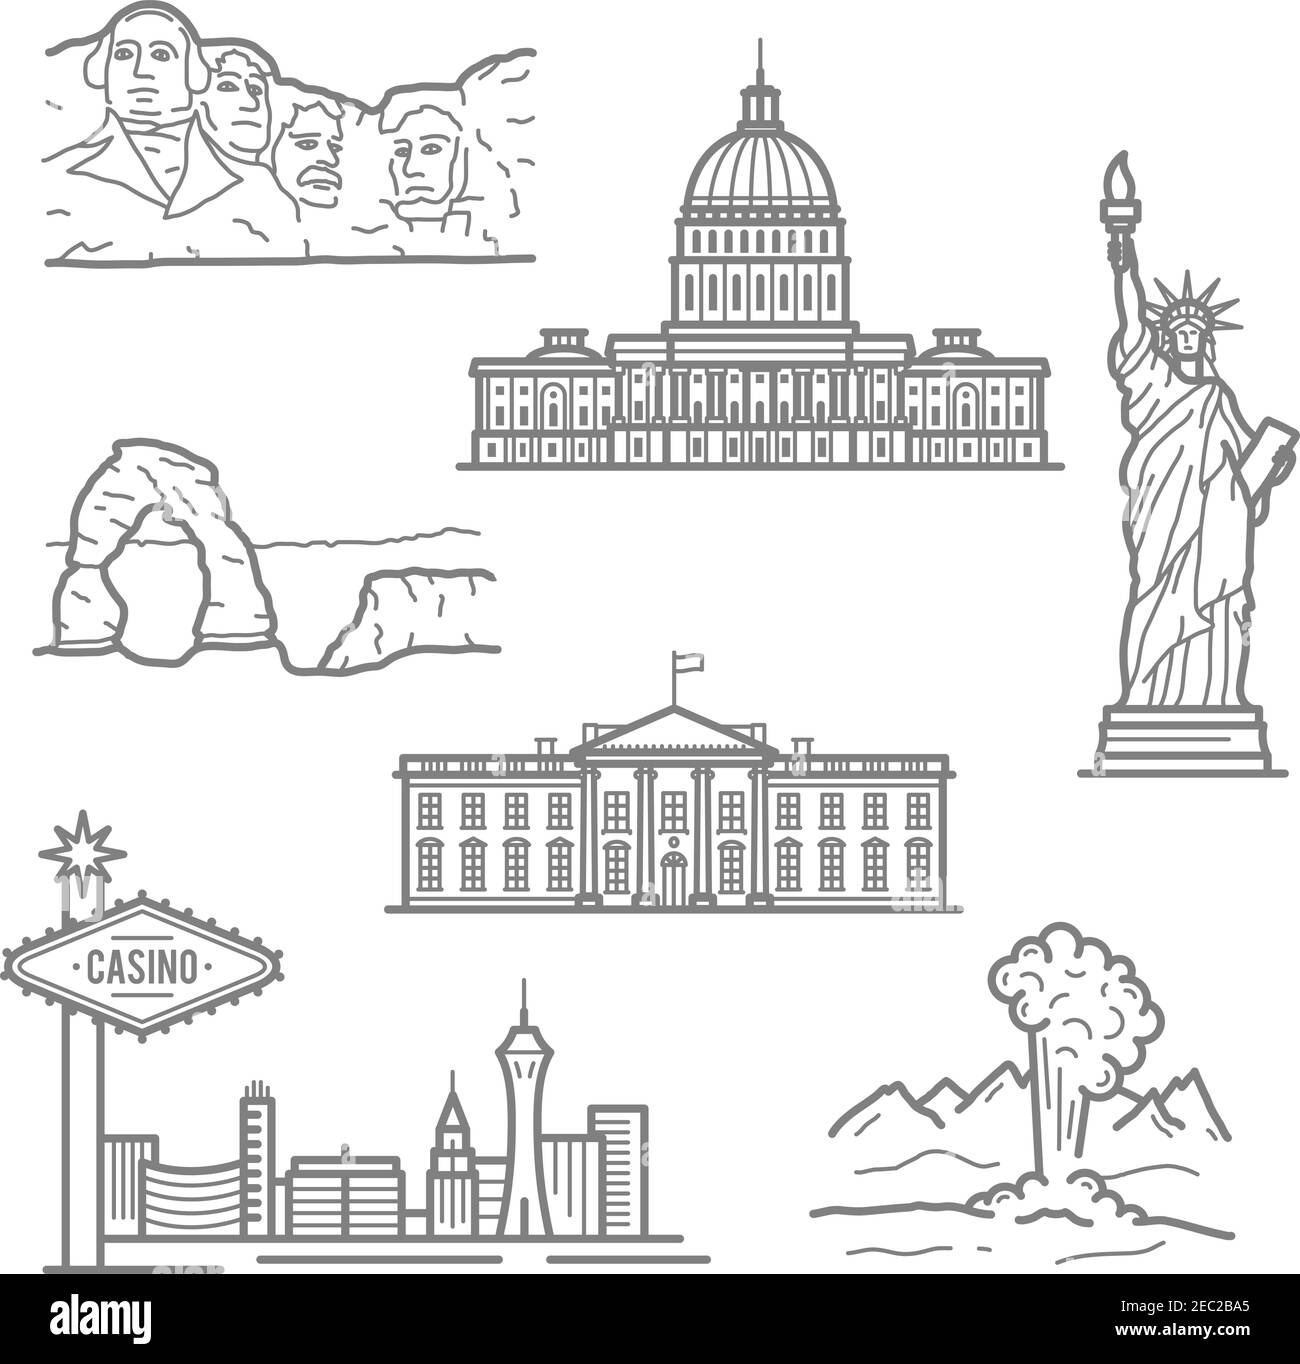 Beliebte nationale Wahrzeichen der USA für Tourismus oder Reiseplanung Design mit dünnen linearen Freiheitsstatue, Casinos von Las Vegas, Capitol, White House Stock Vektor